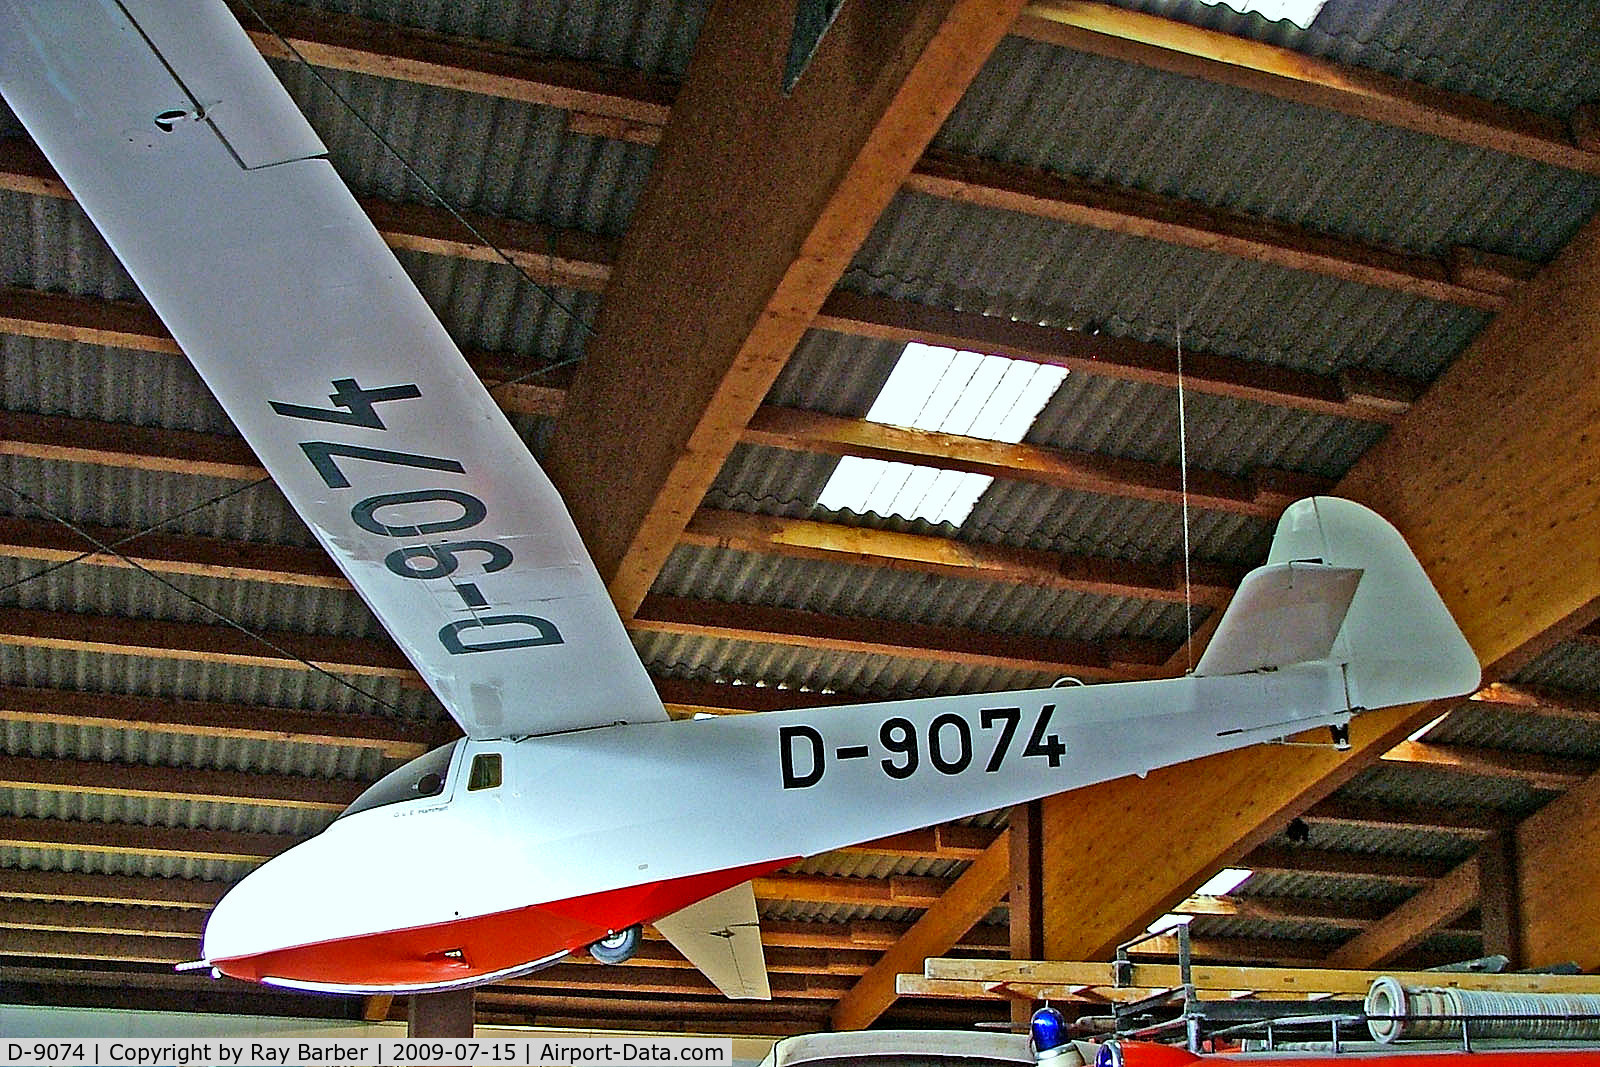 D-9074, Scheibe L-Spatz 55 C/N 567, D-9074   Scheibe L-Spatz 55 [567] (Museum Fahrzeug-Technik-Luftfahrt) Bad Ischl Museum~OE 15/07/2009